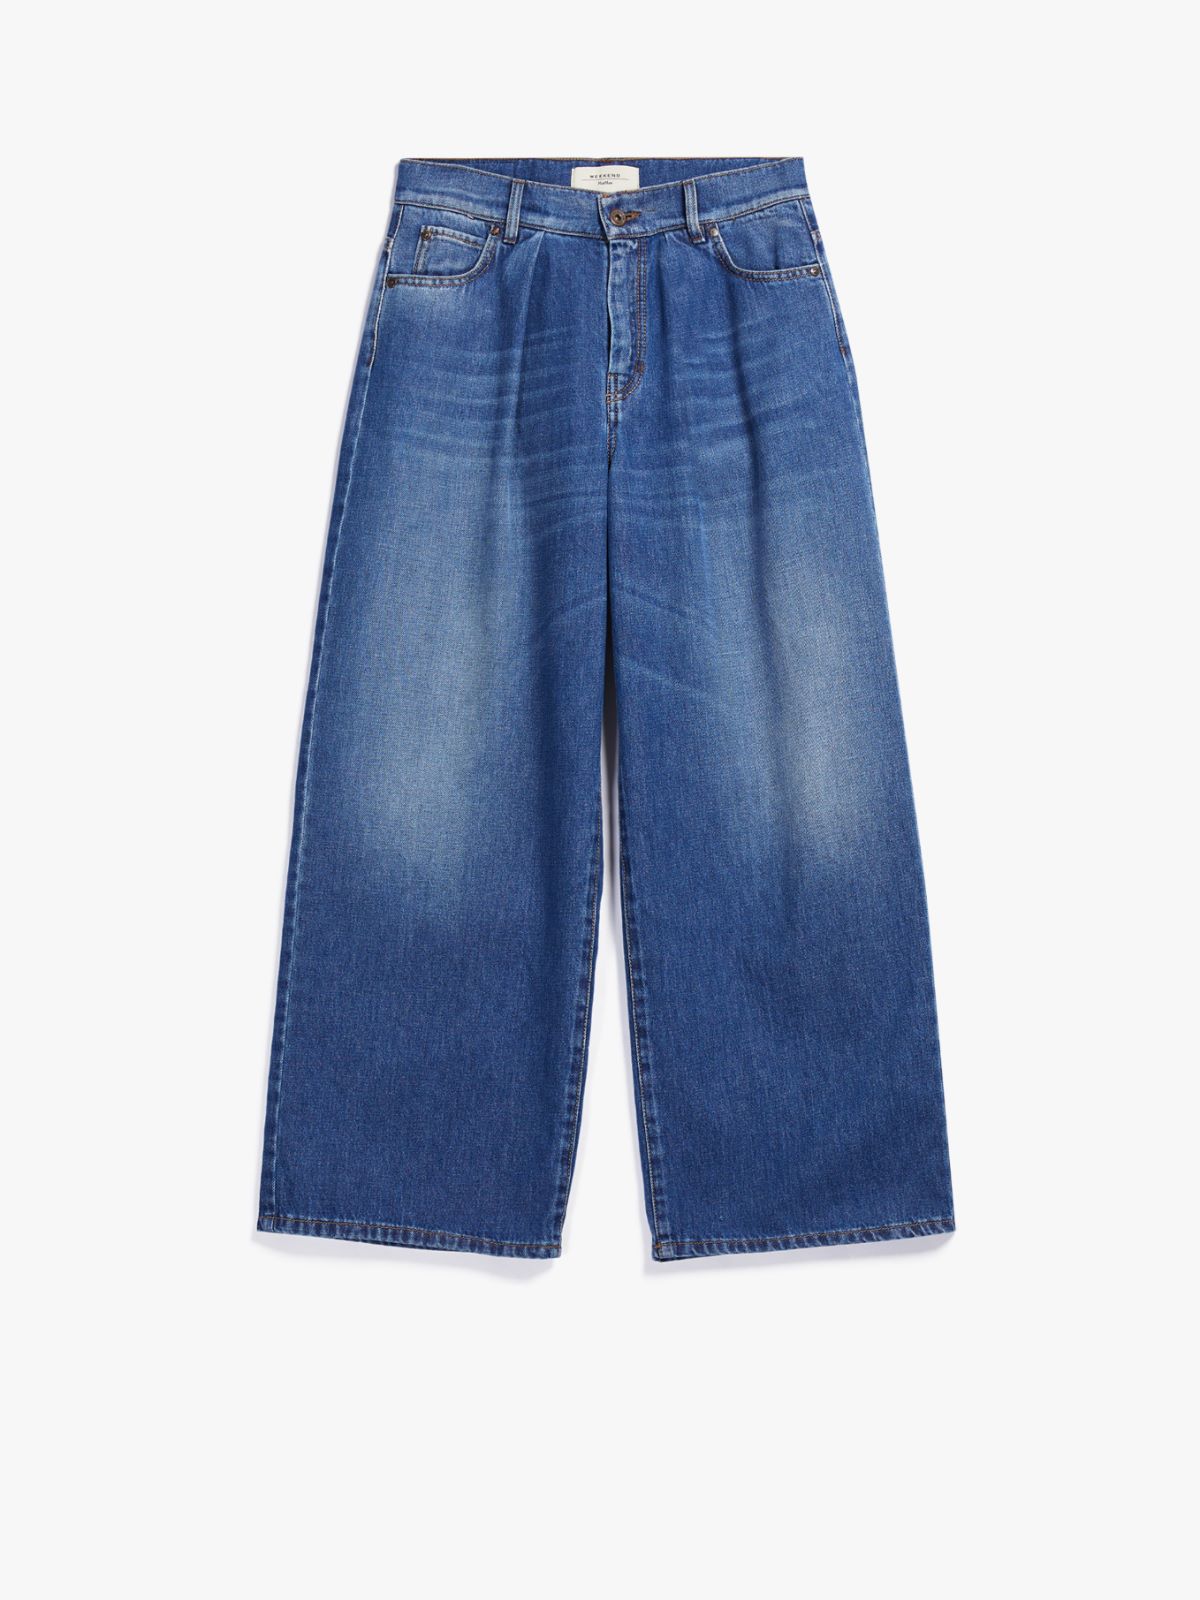 Cotton denim jeans - NAVY - Weekend Max Mara - 5